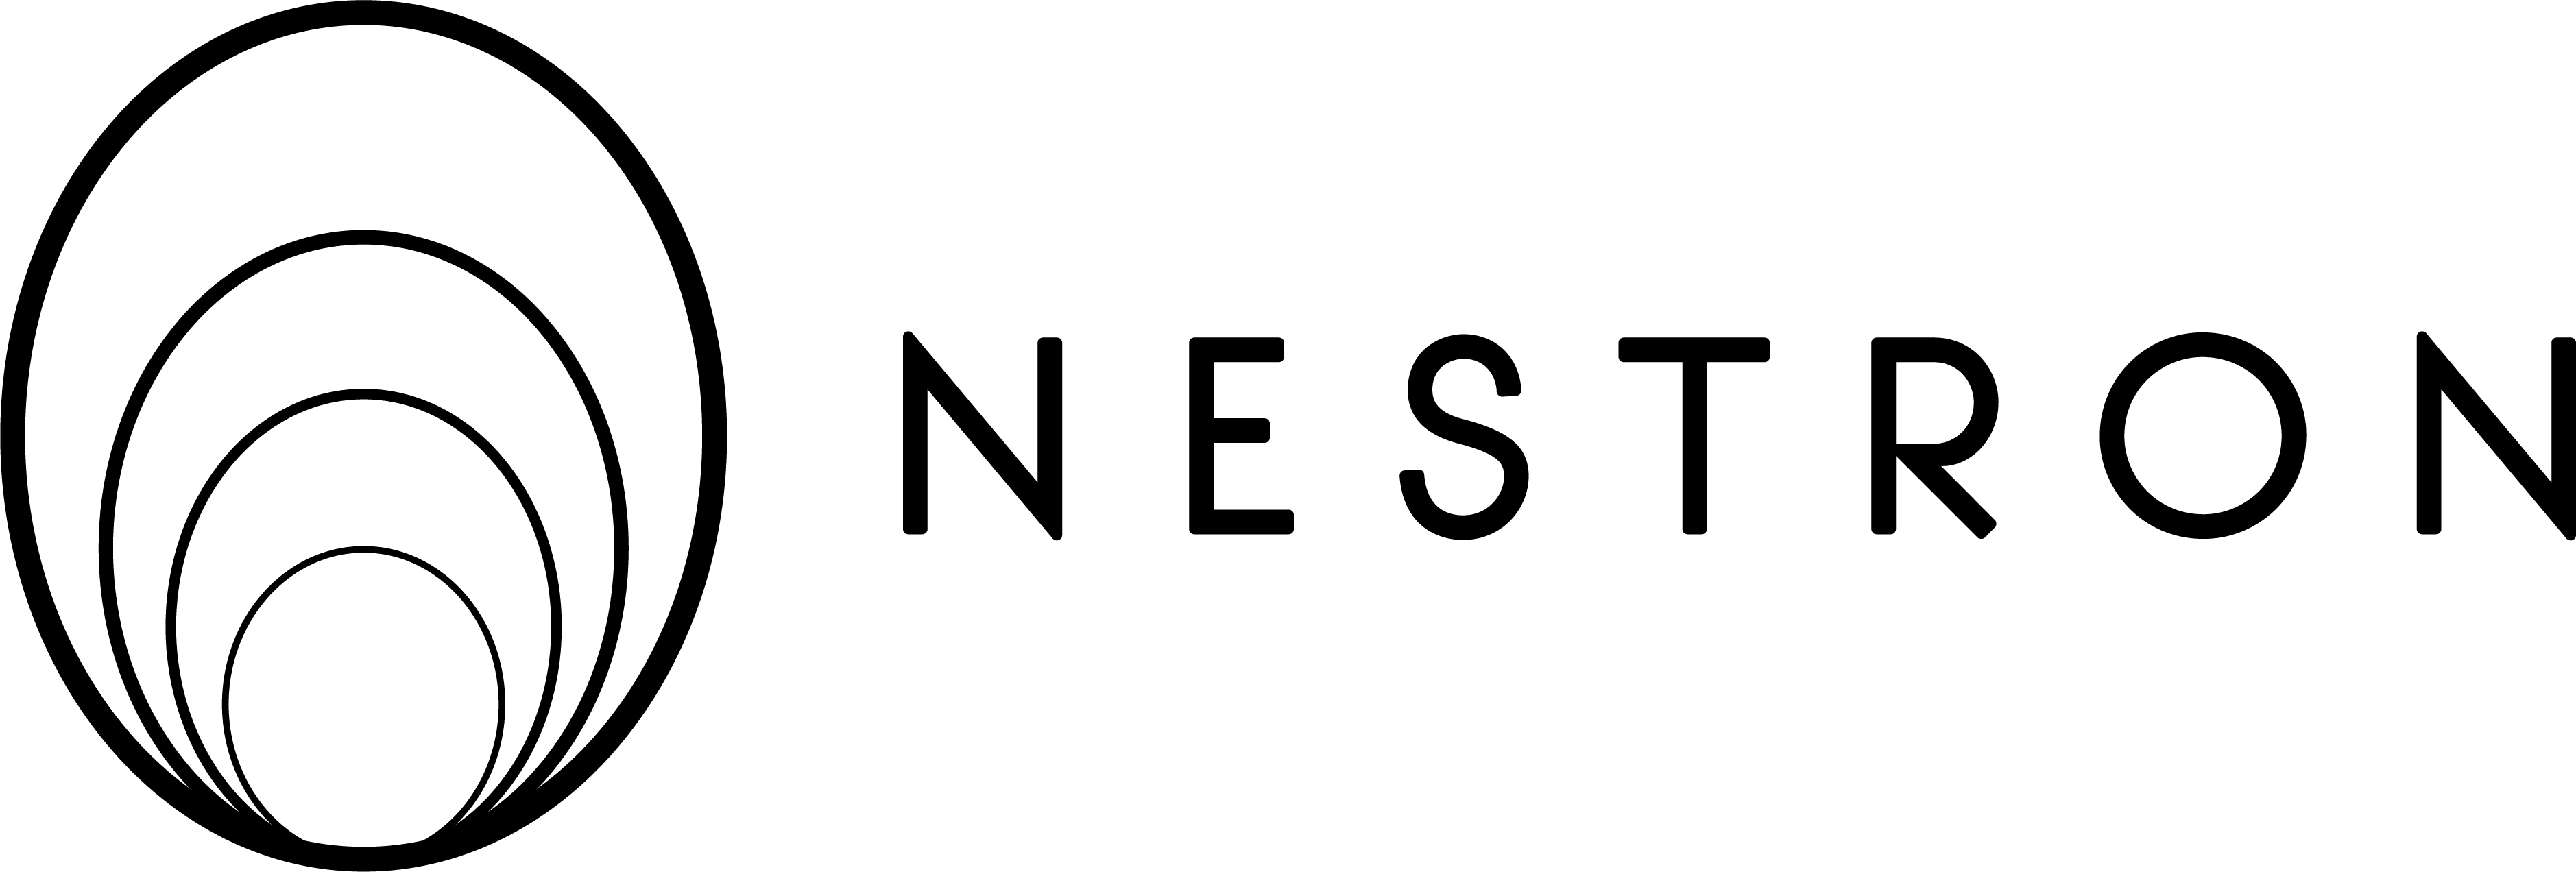 Nestron House Logo